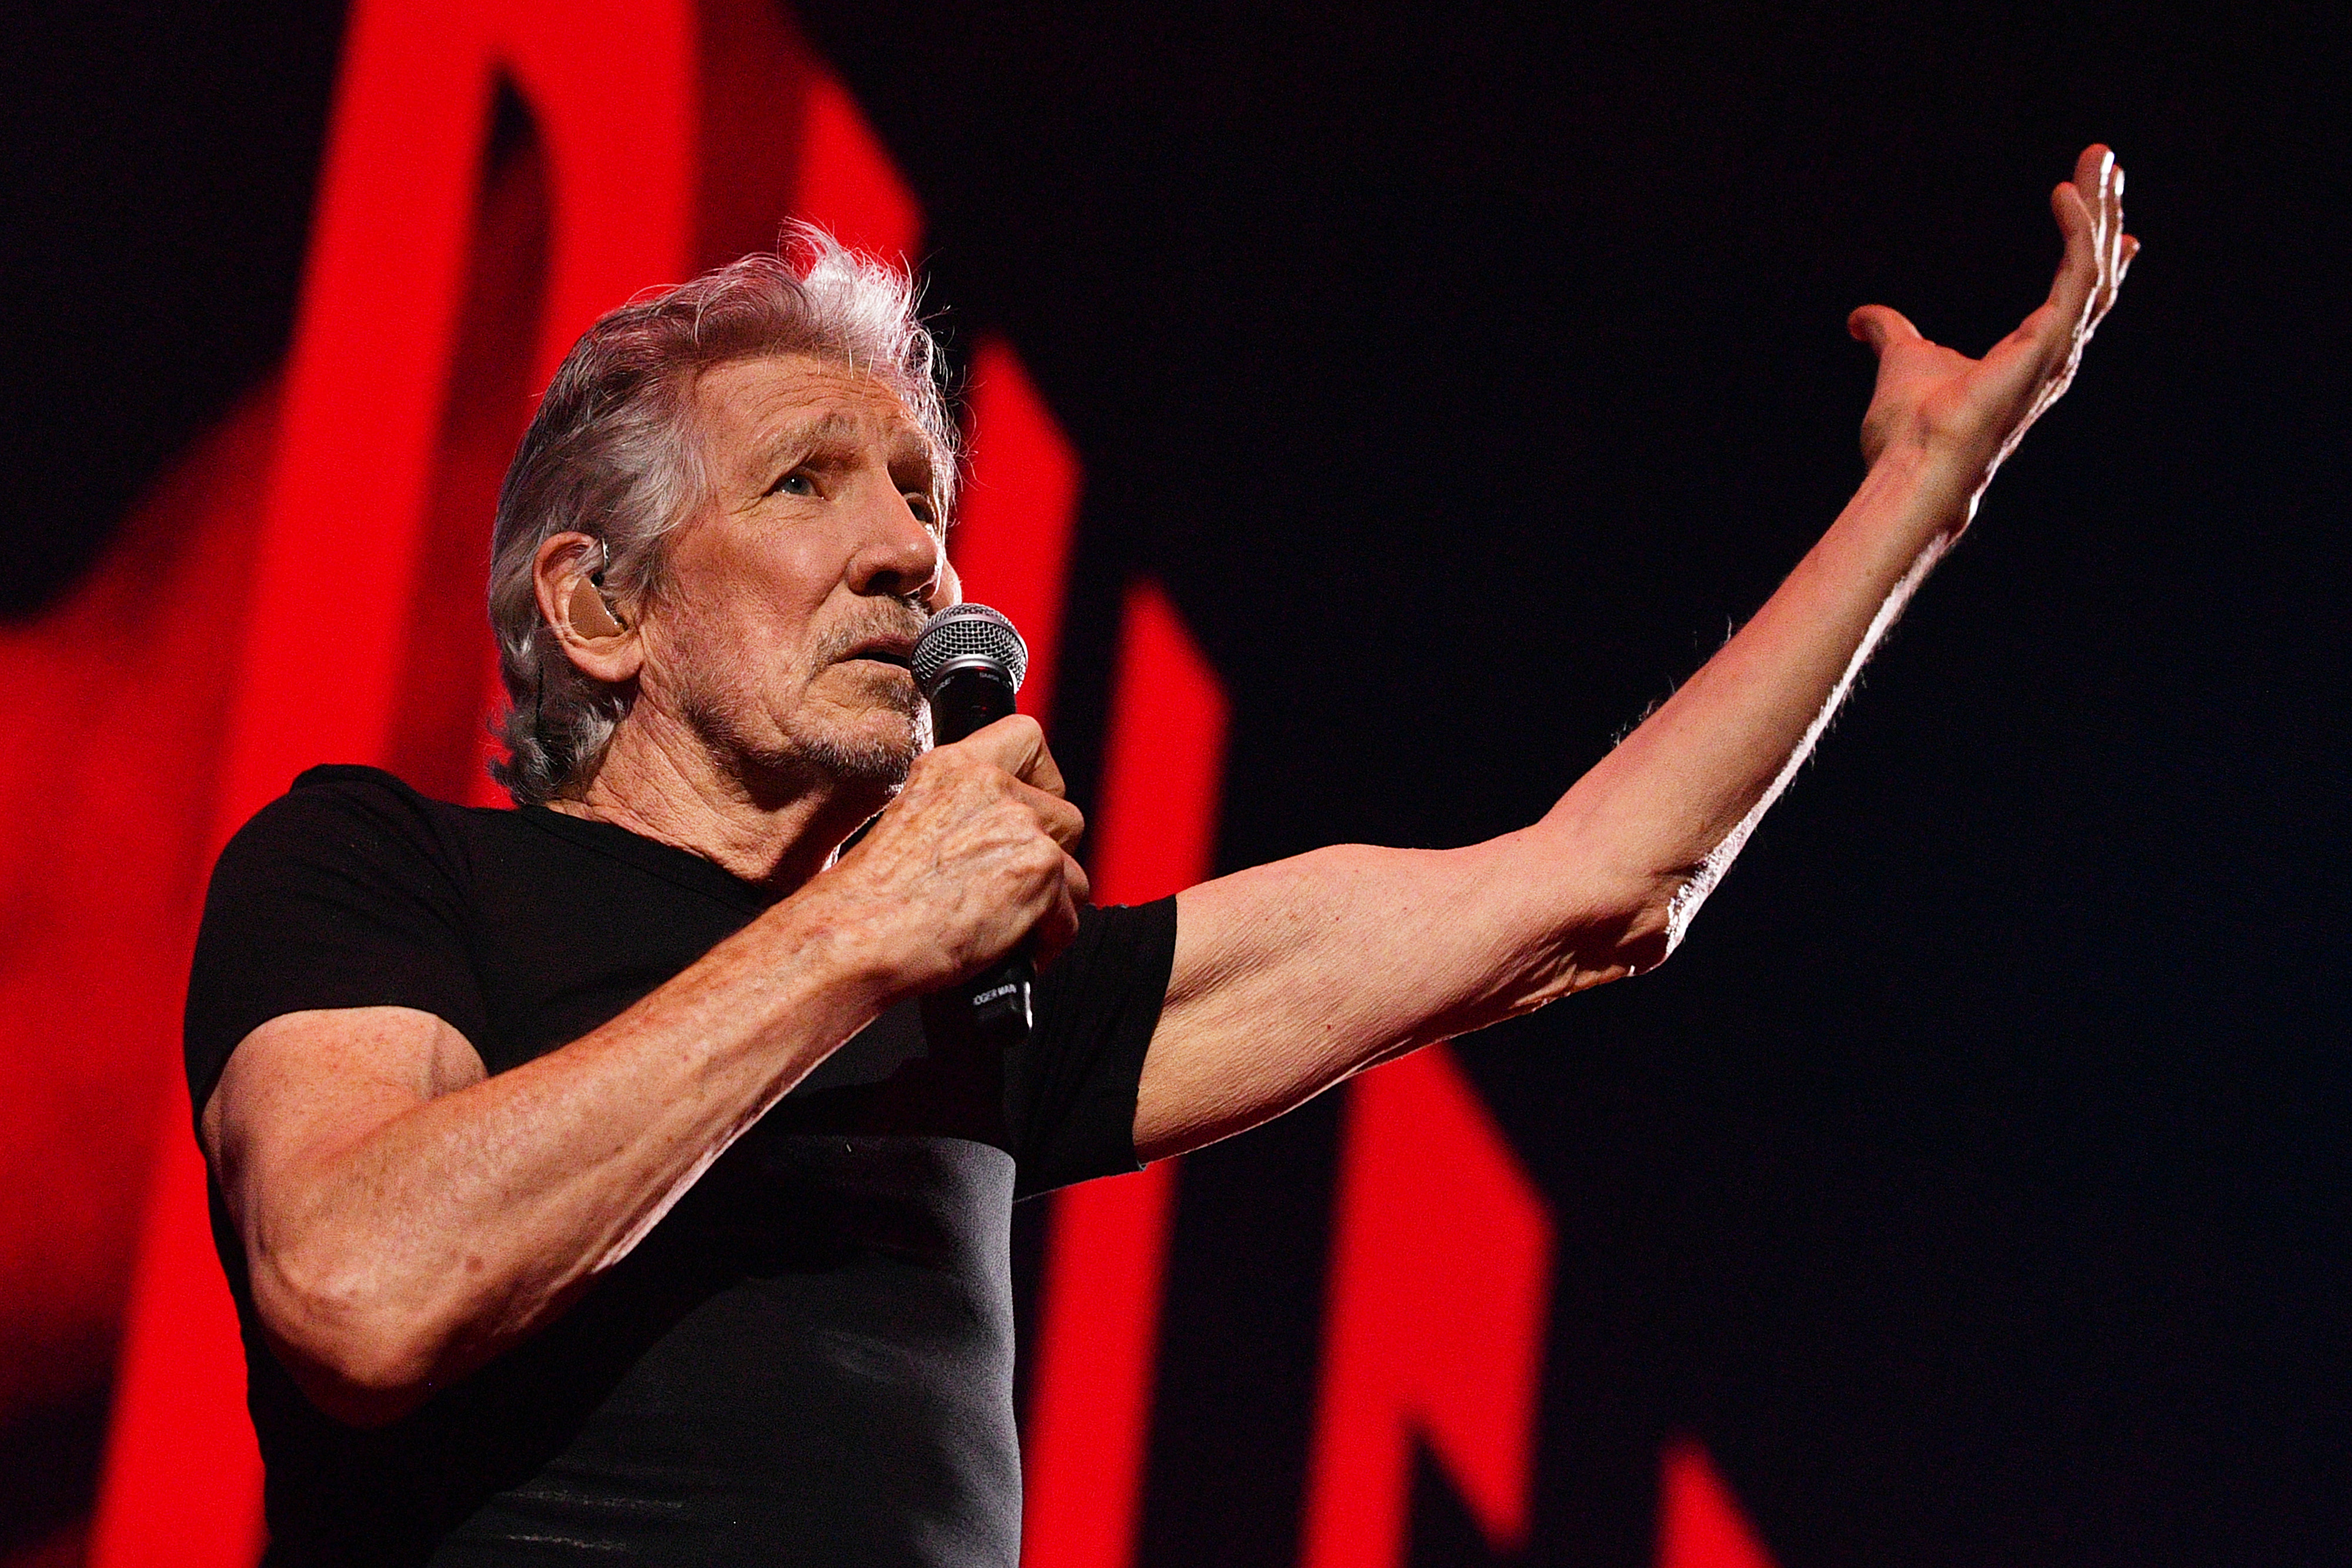 Roger Waters von Pink Floyd live zu sehen, war ein fantastisches Spektakel